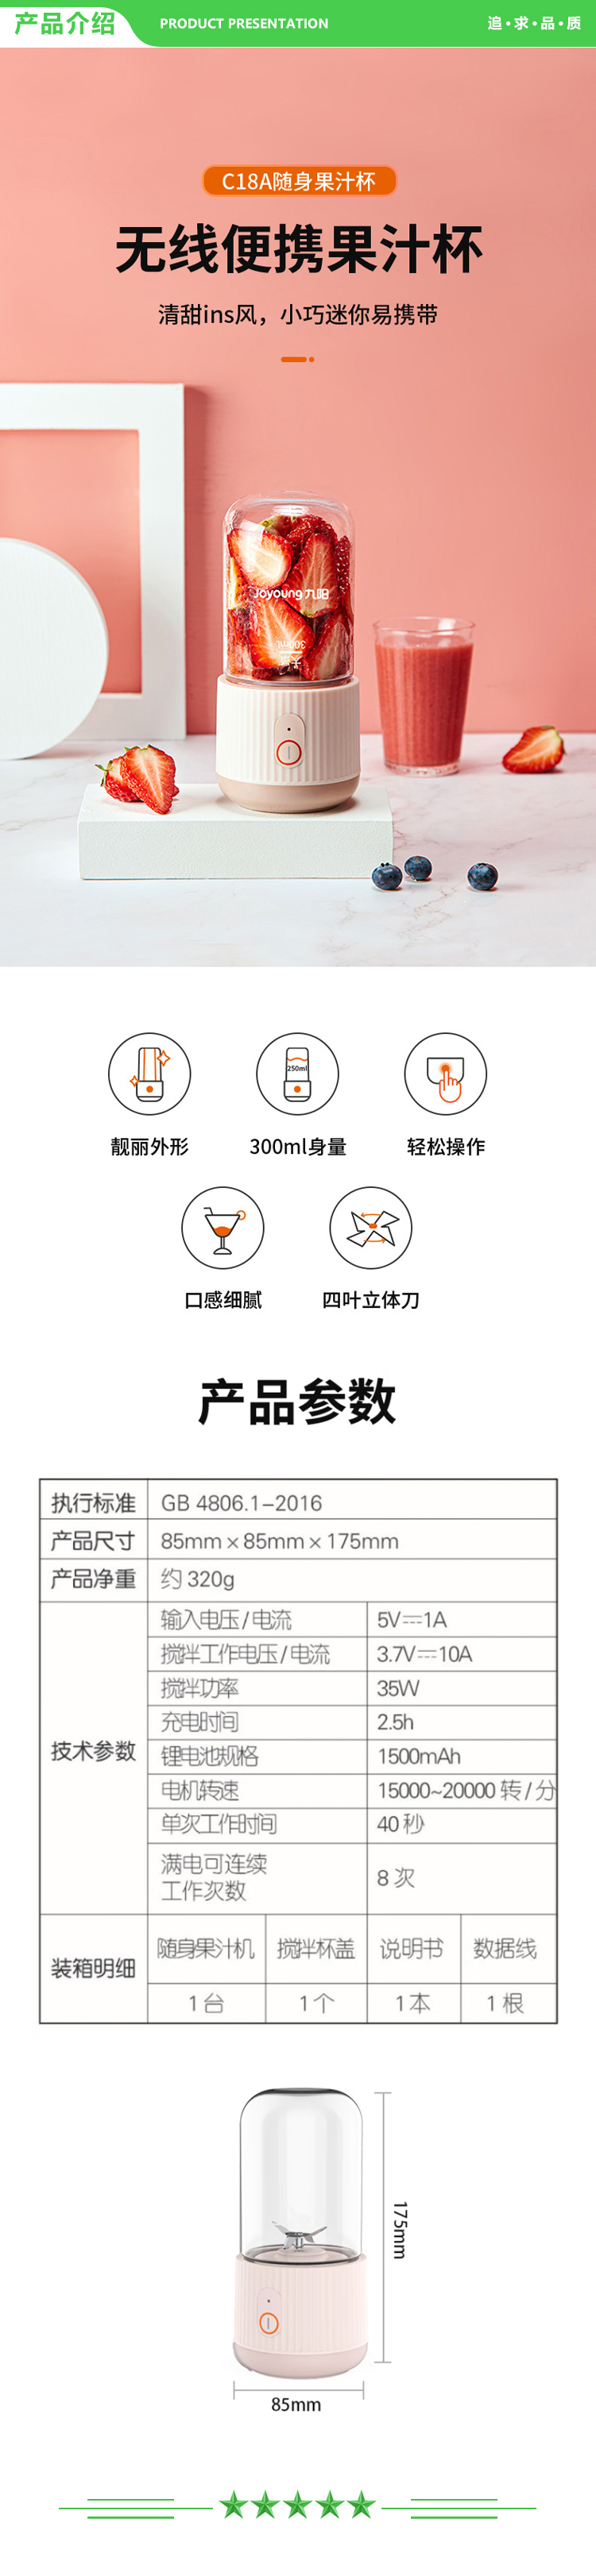 九阳 Joyoung L3-C18A 榨汁机 便携式迷你无线果汁机料理机随行杯 粉色.jpg